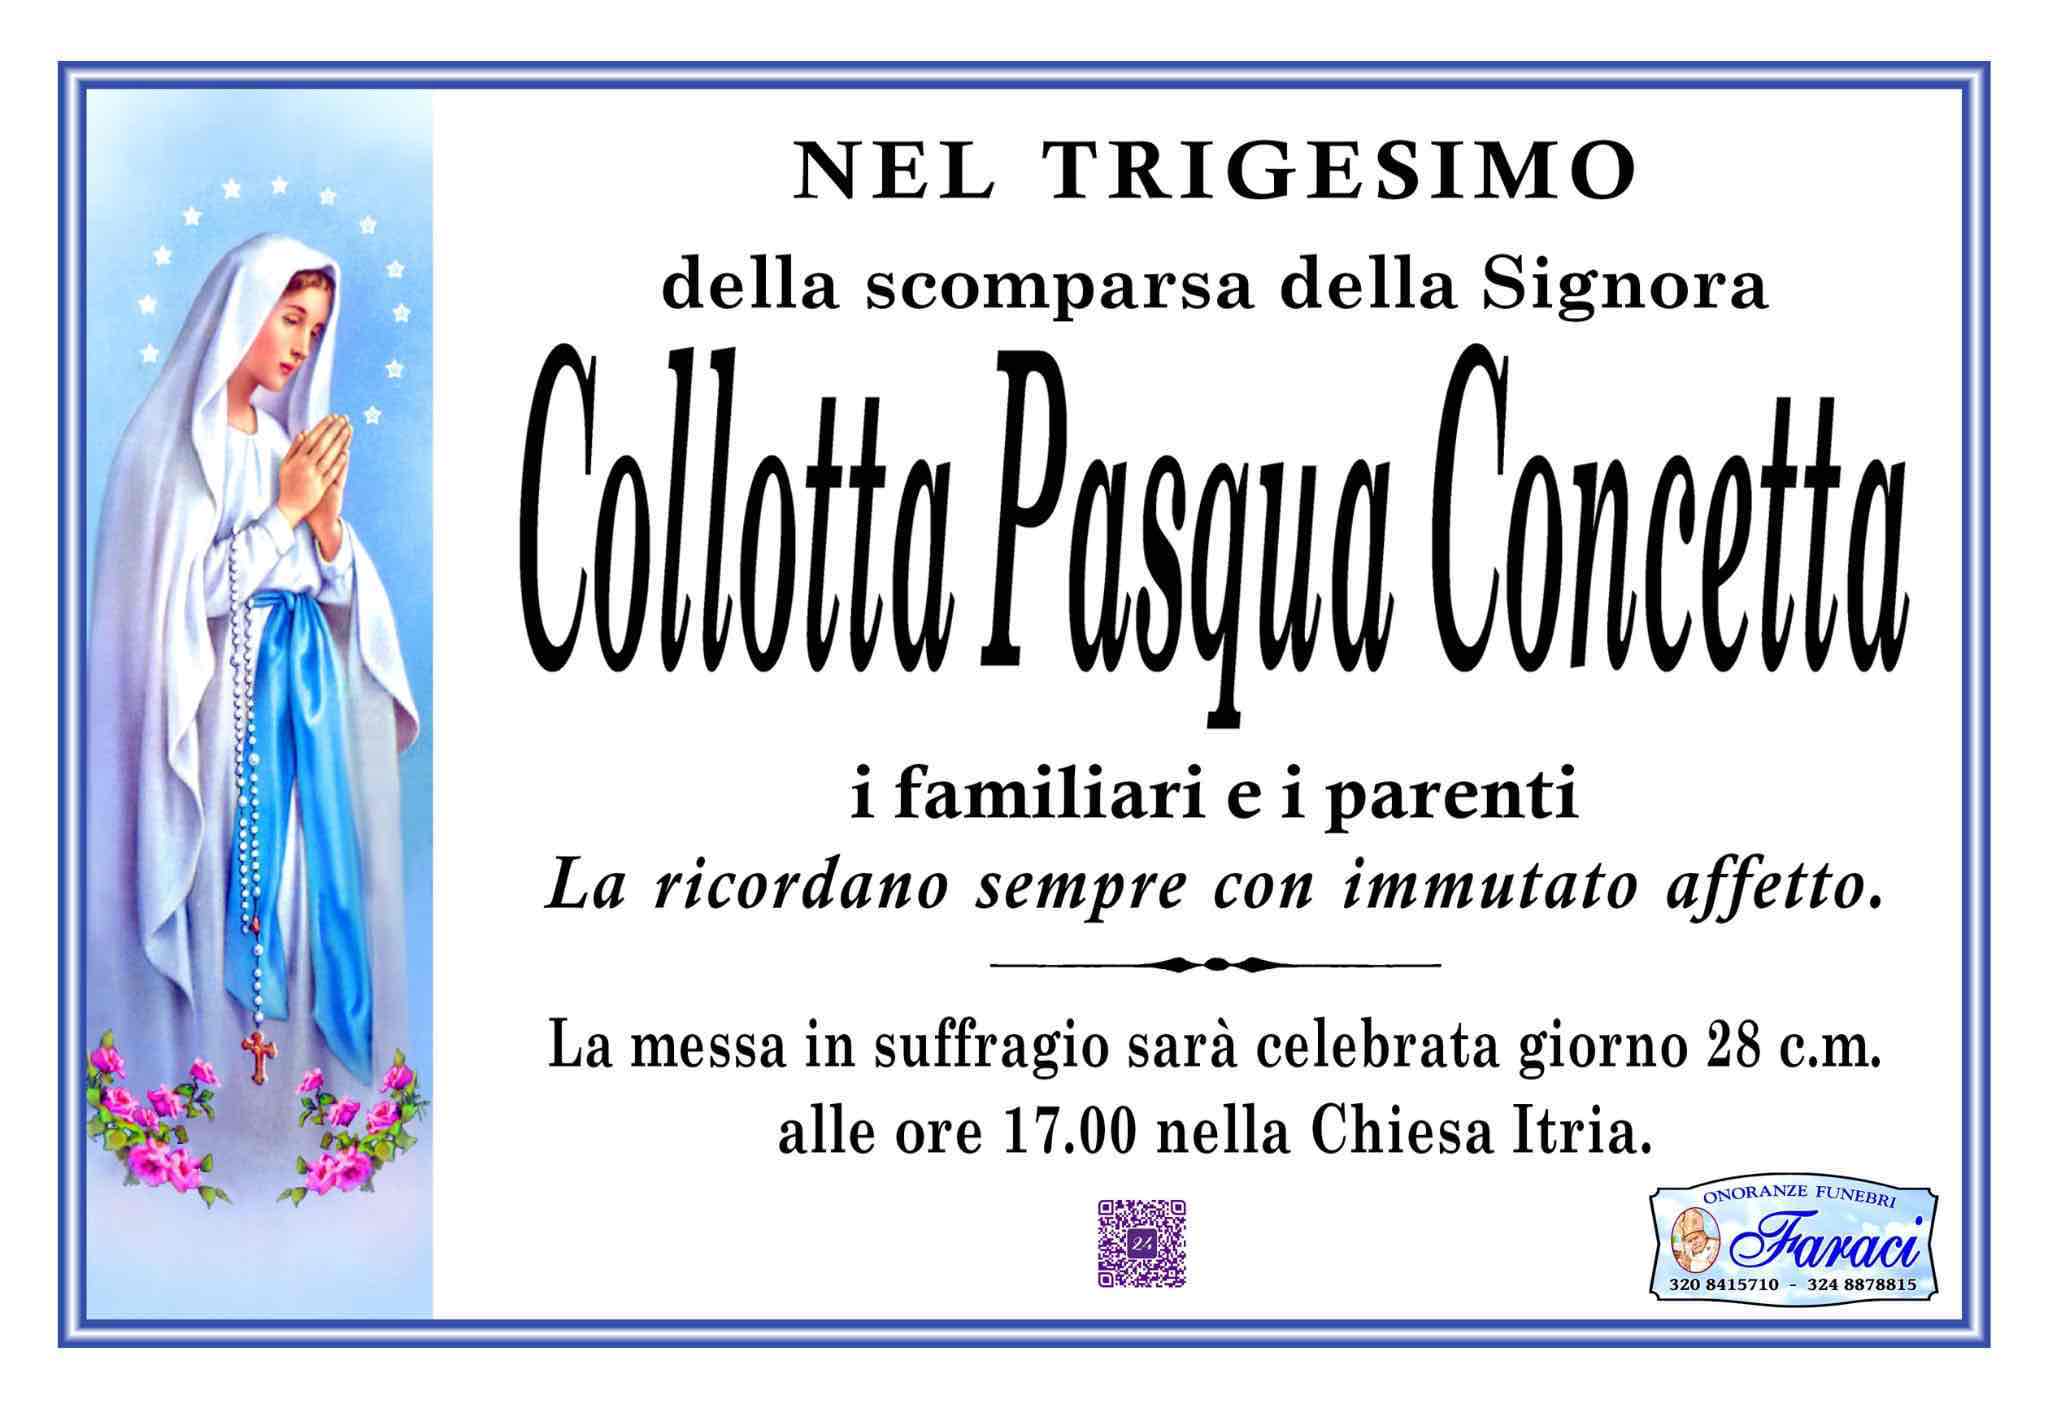 Pasqua Concetta Collotta